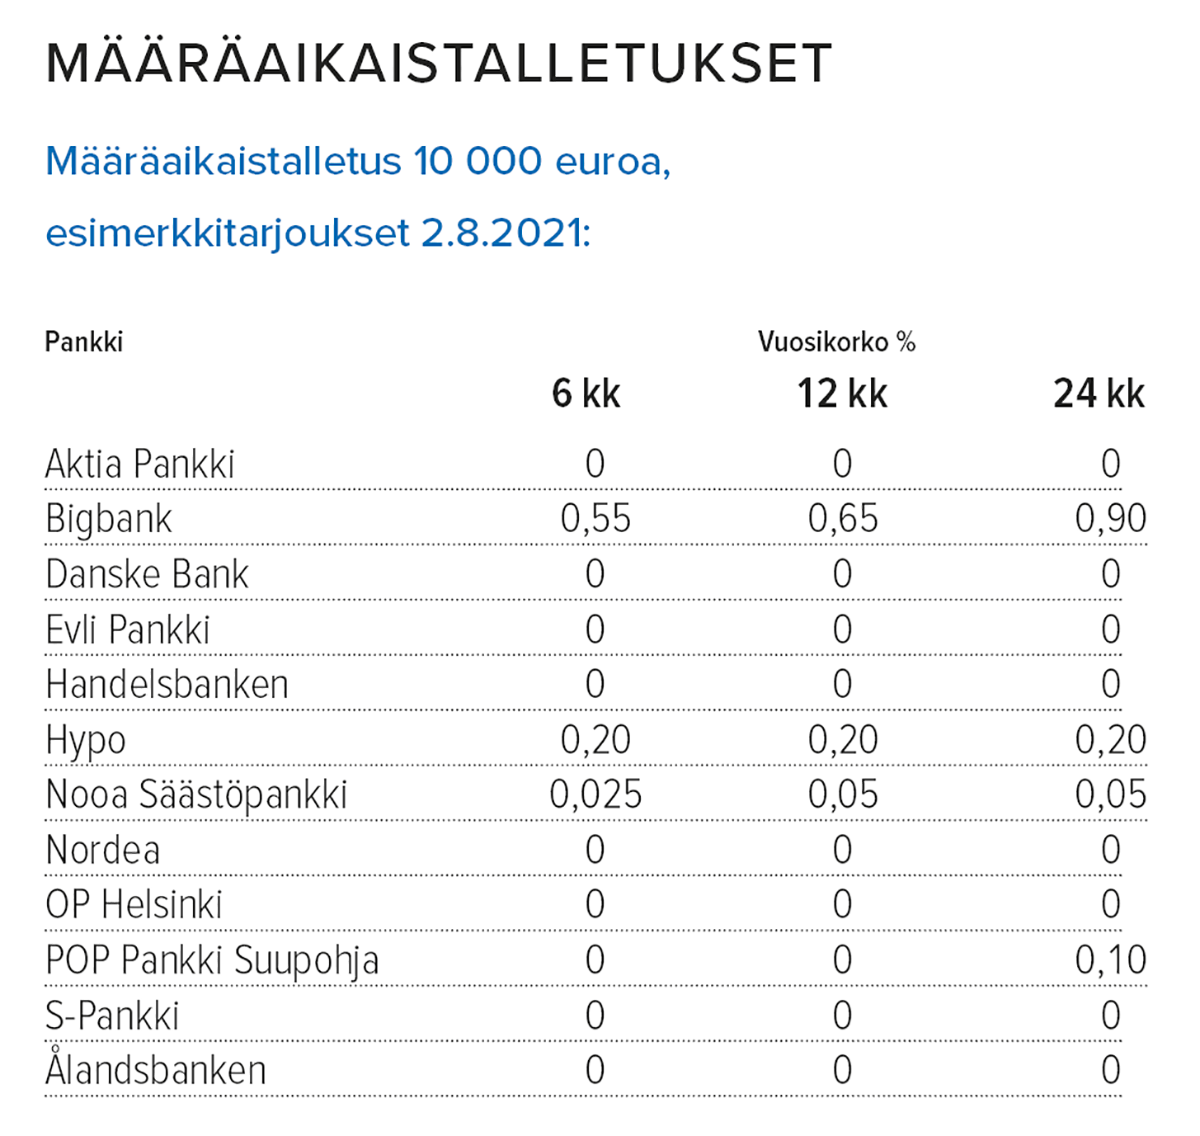 Lähde: Suomen Rahatieto